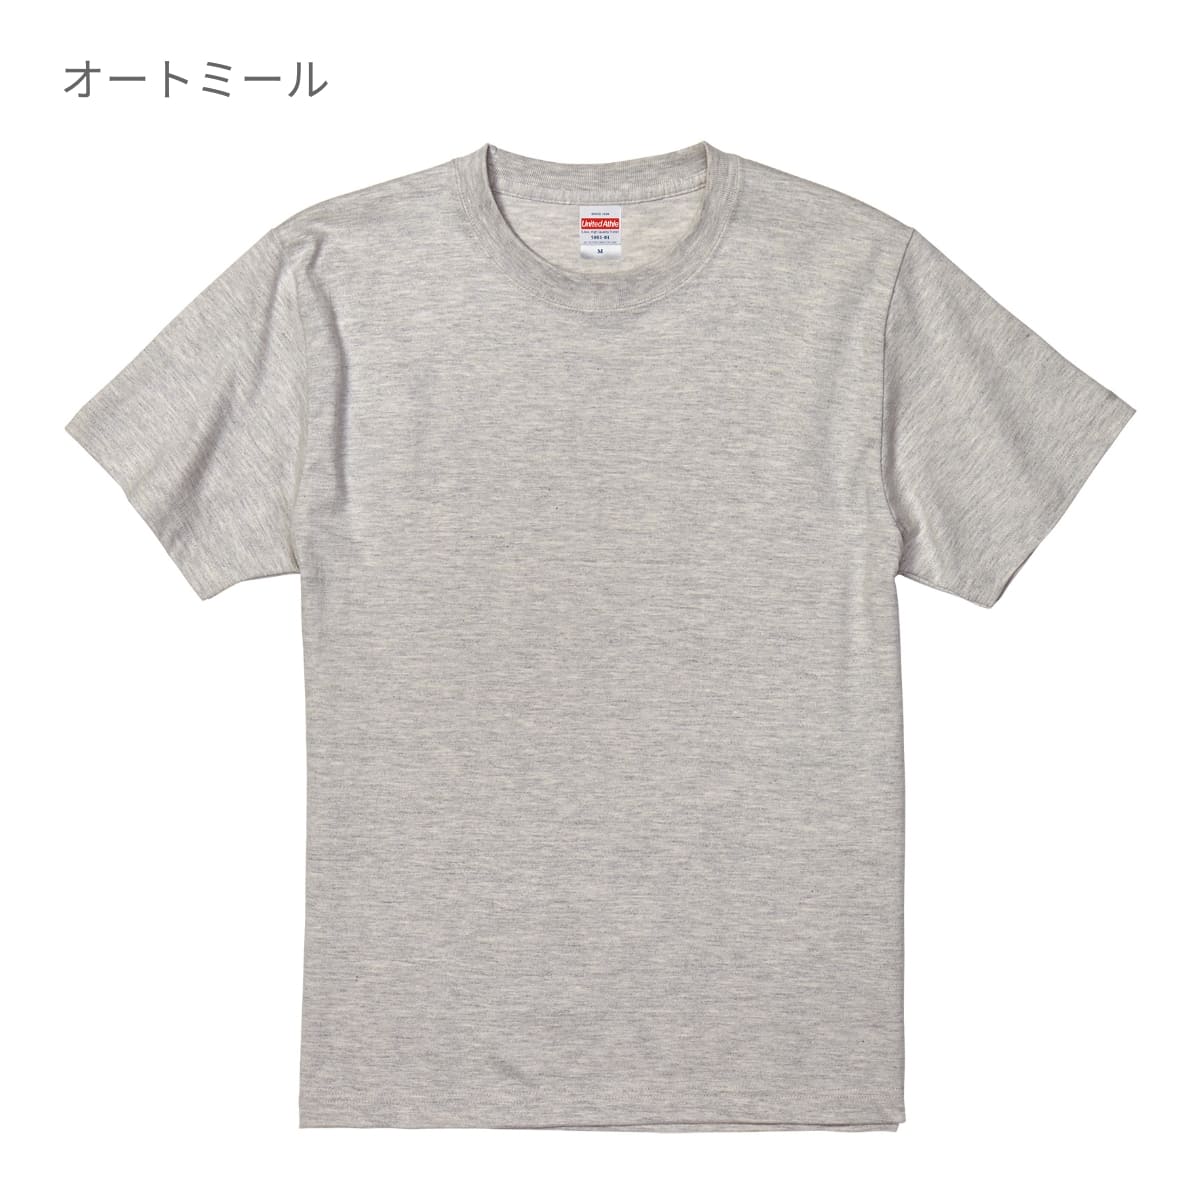 5.6オンス ハイクオリティーTシャツ | ビッグサイズ | 1枚 | 5001-01 | ヘイジーグリーン